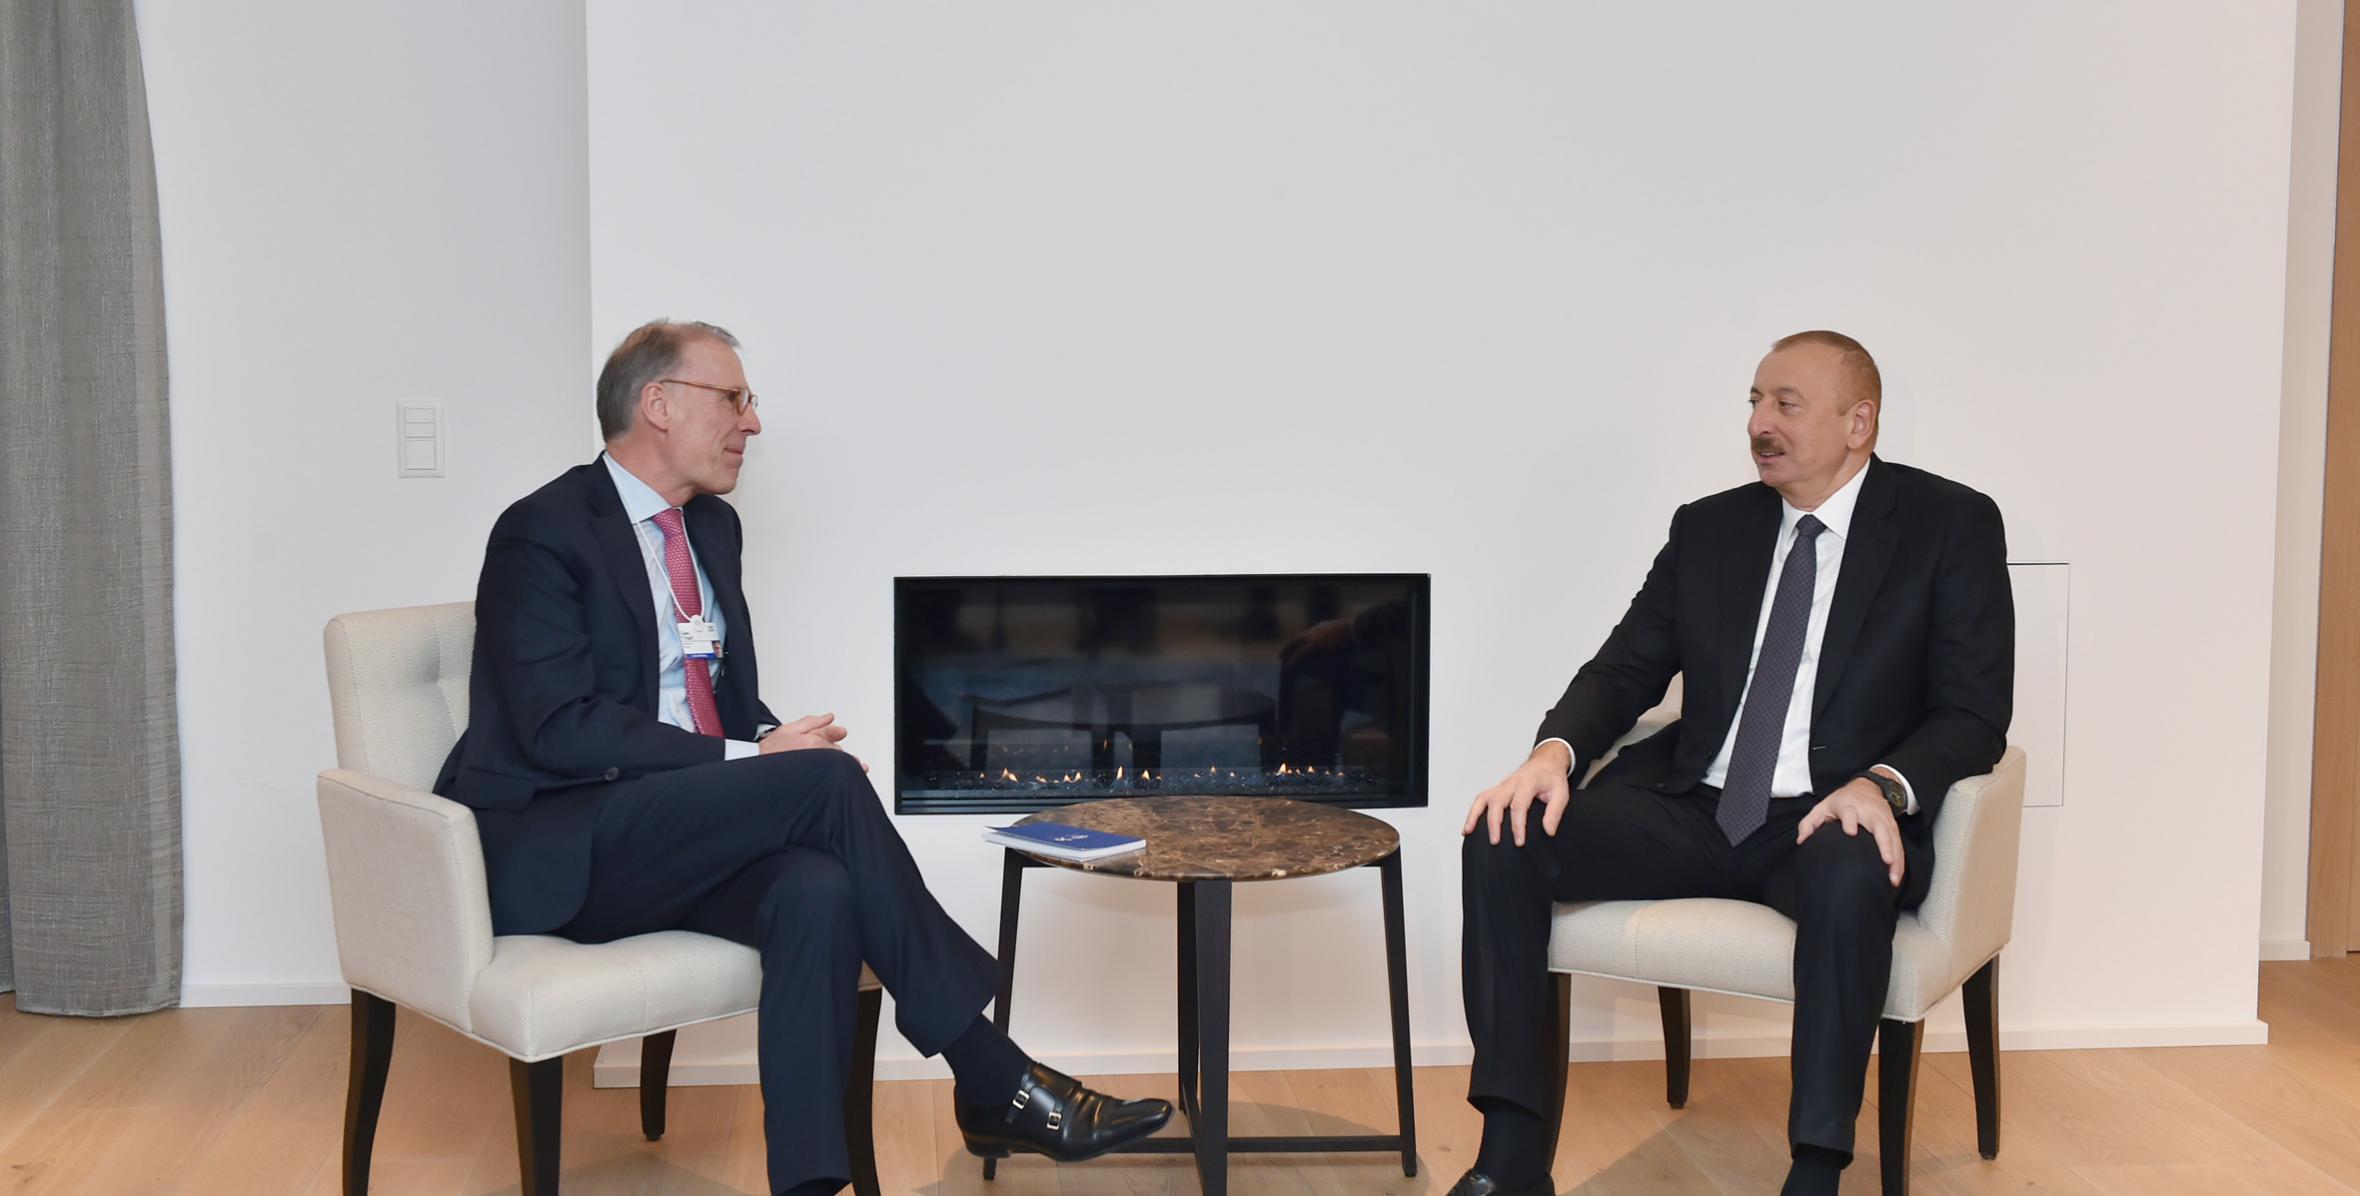 Ilham Aliyev met with Carlsberg Group CEO in Davos